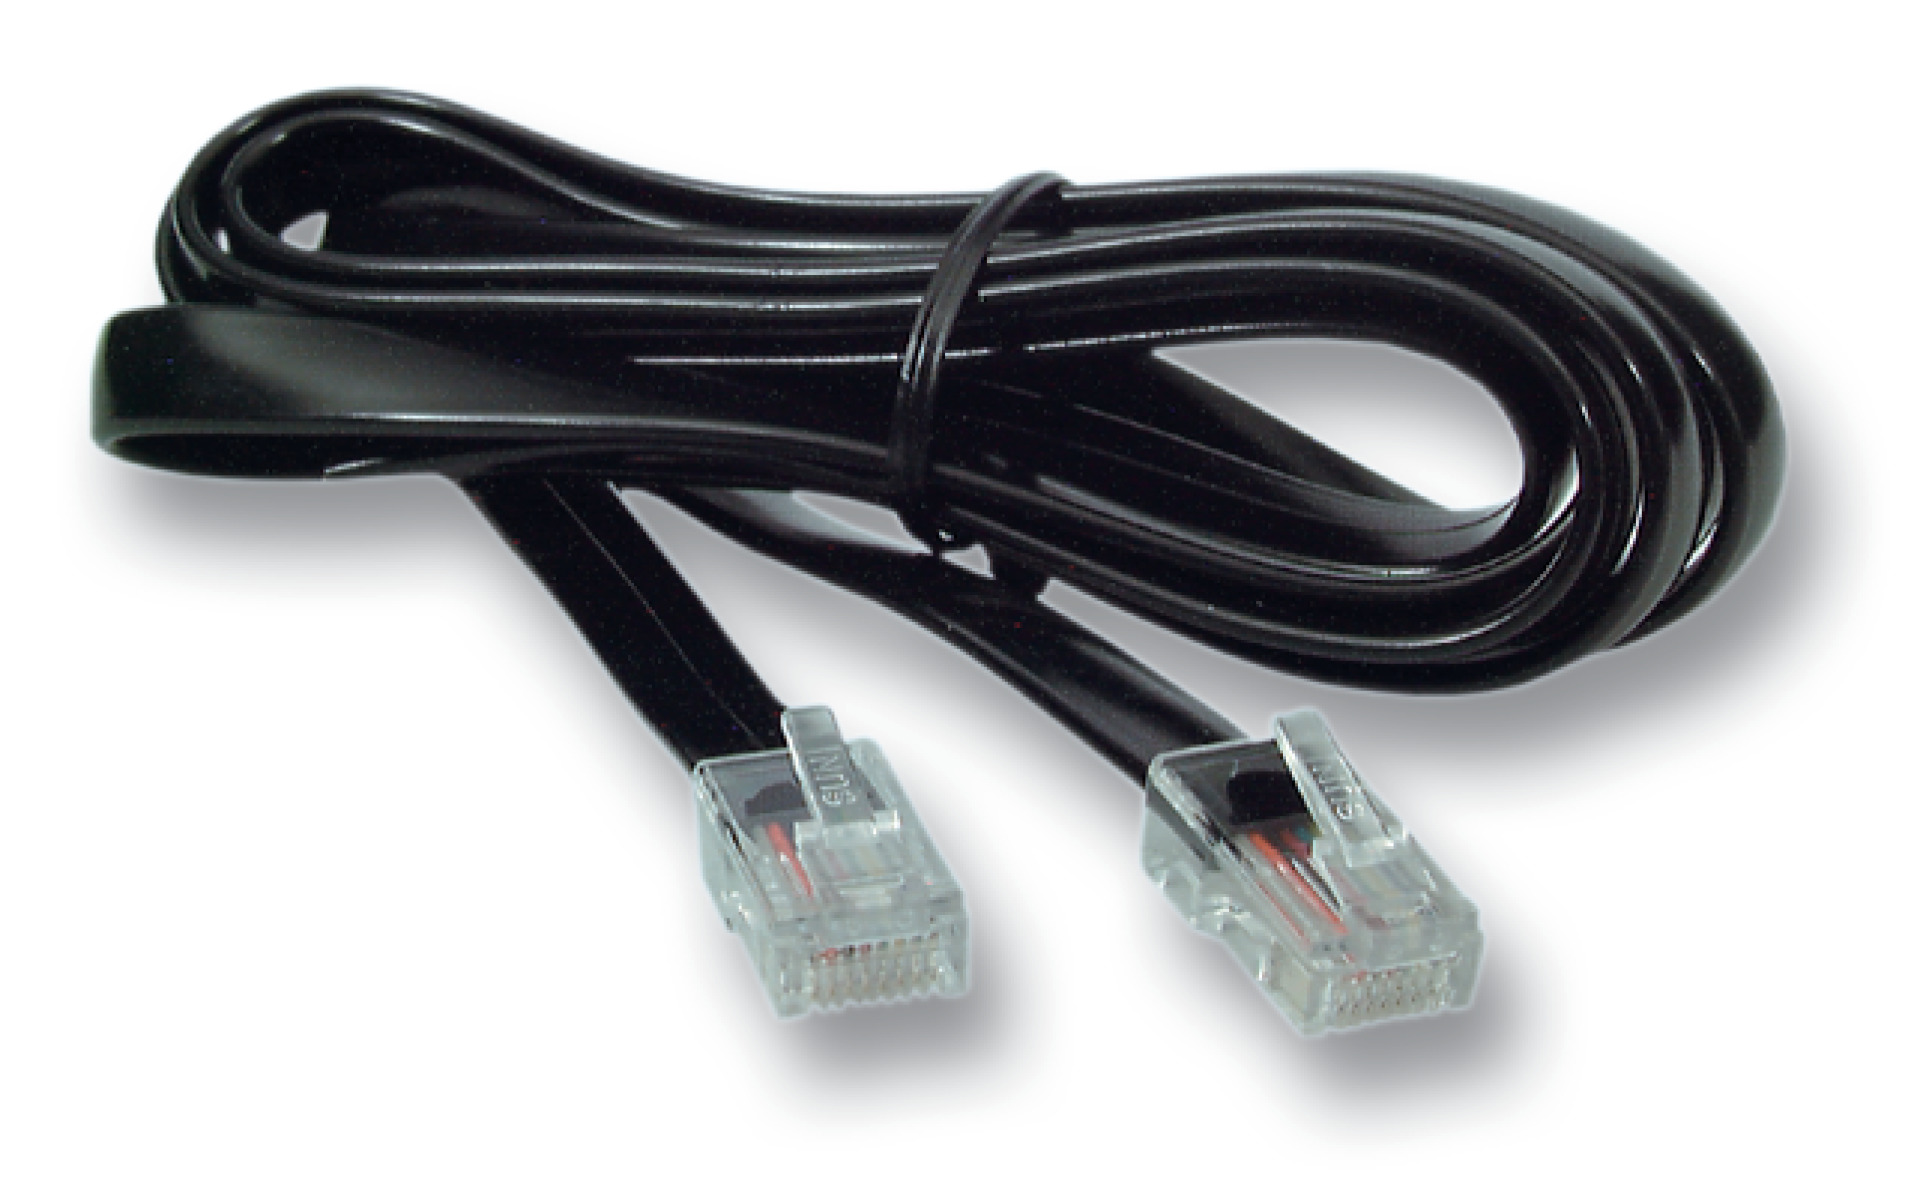 Modular cable RJ45 (8/8)/RJ45 (8/8), 1:1, flat cable, 2,0m